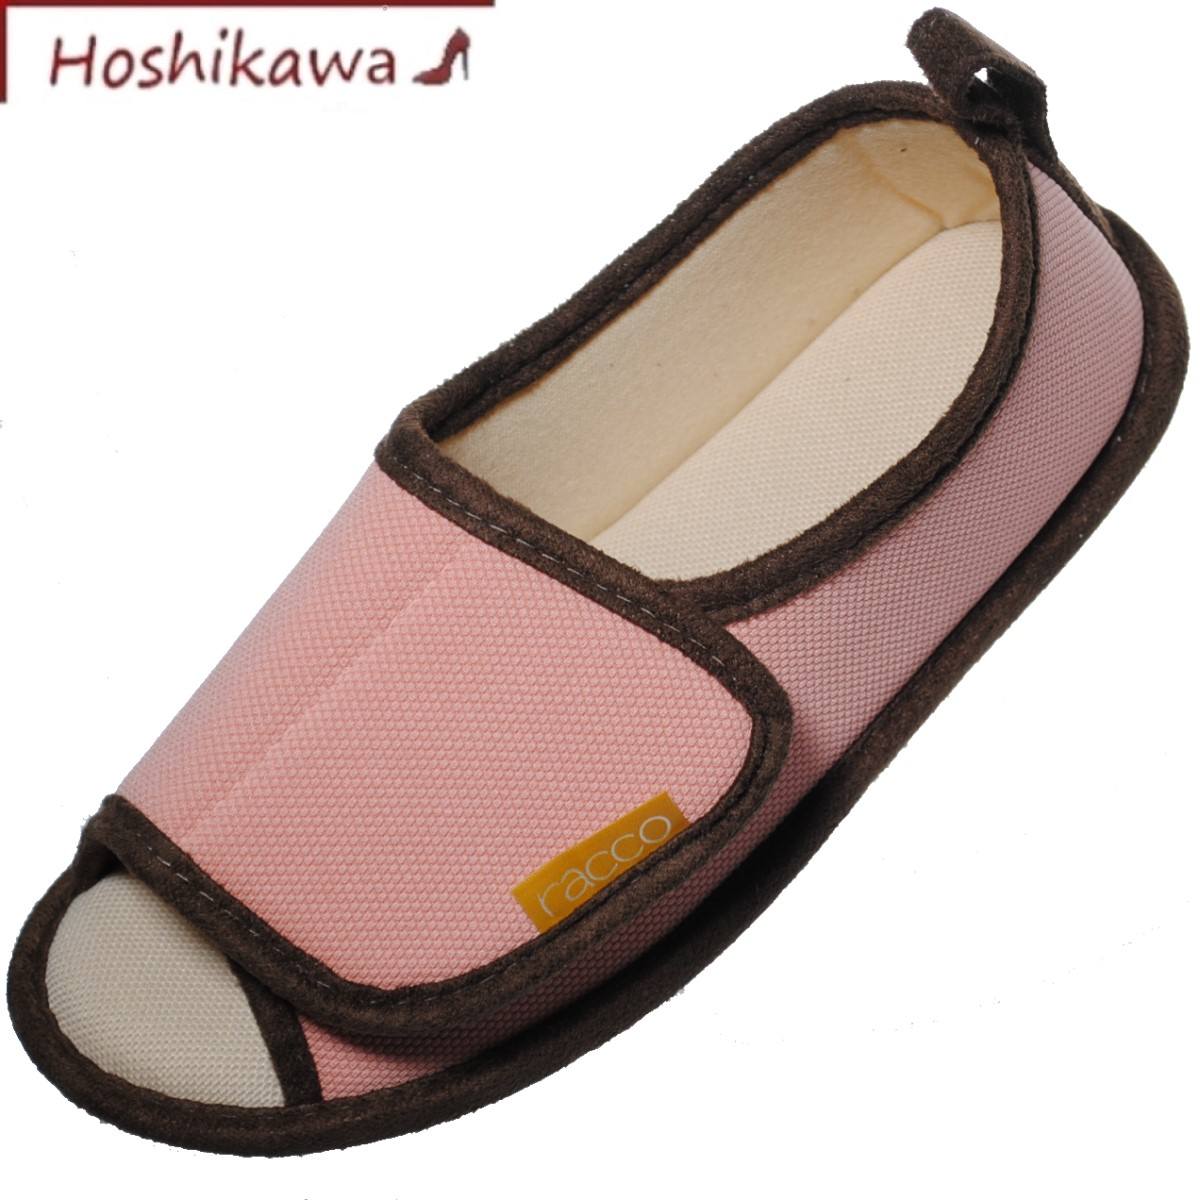 【靴のHOSHIKAWA】 『スリッパ 310000』 M L女性用